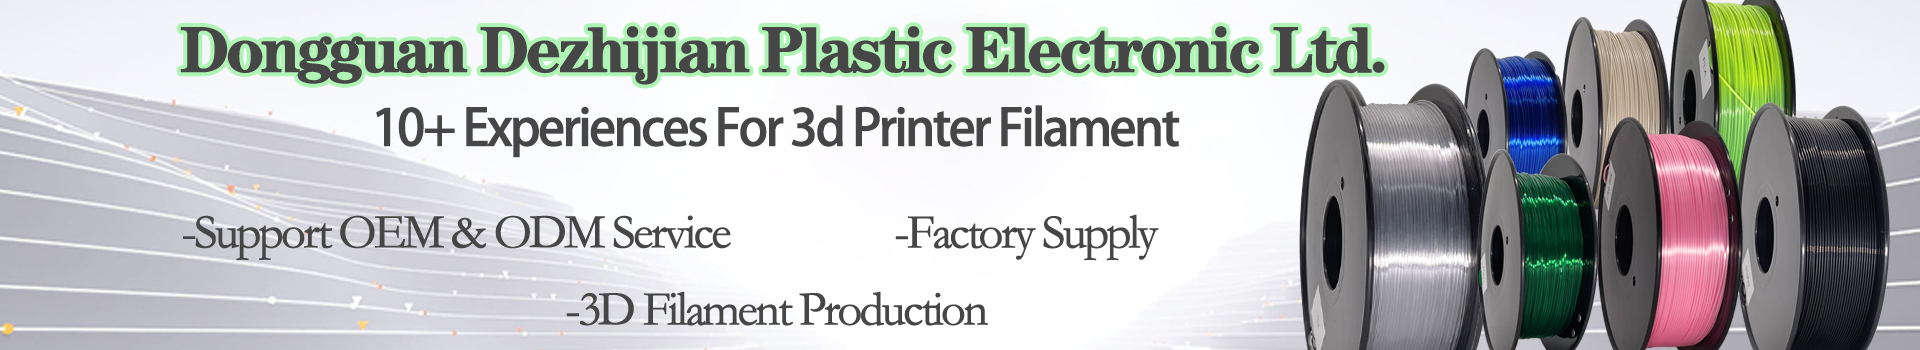 Pinrui paillettes PLA 1.75mm 3D Imprimante 3D Filament Sparkle Twinkleling Couleur arc-en-ciel